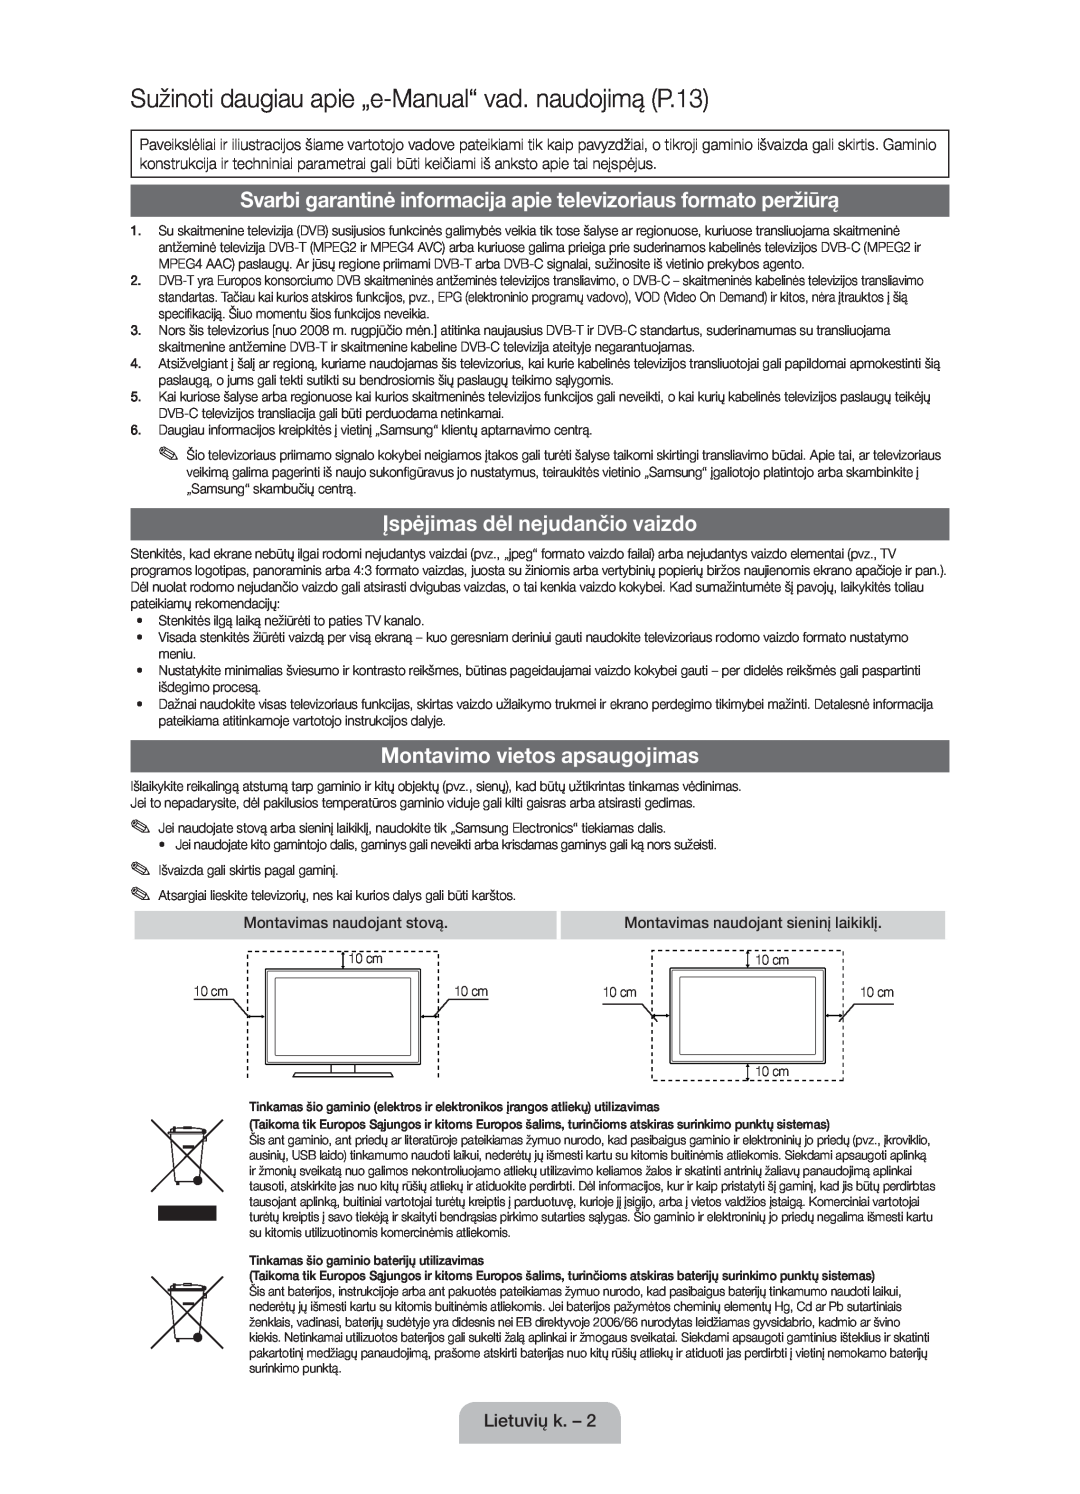 Samsung UE40D5000PWXZG manual Sužinoti daugiau apie „e-Manual“ vad. naudojimą P.13, Įspėjimas dėl nejudančio vaizdo 